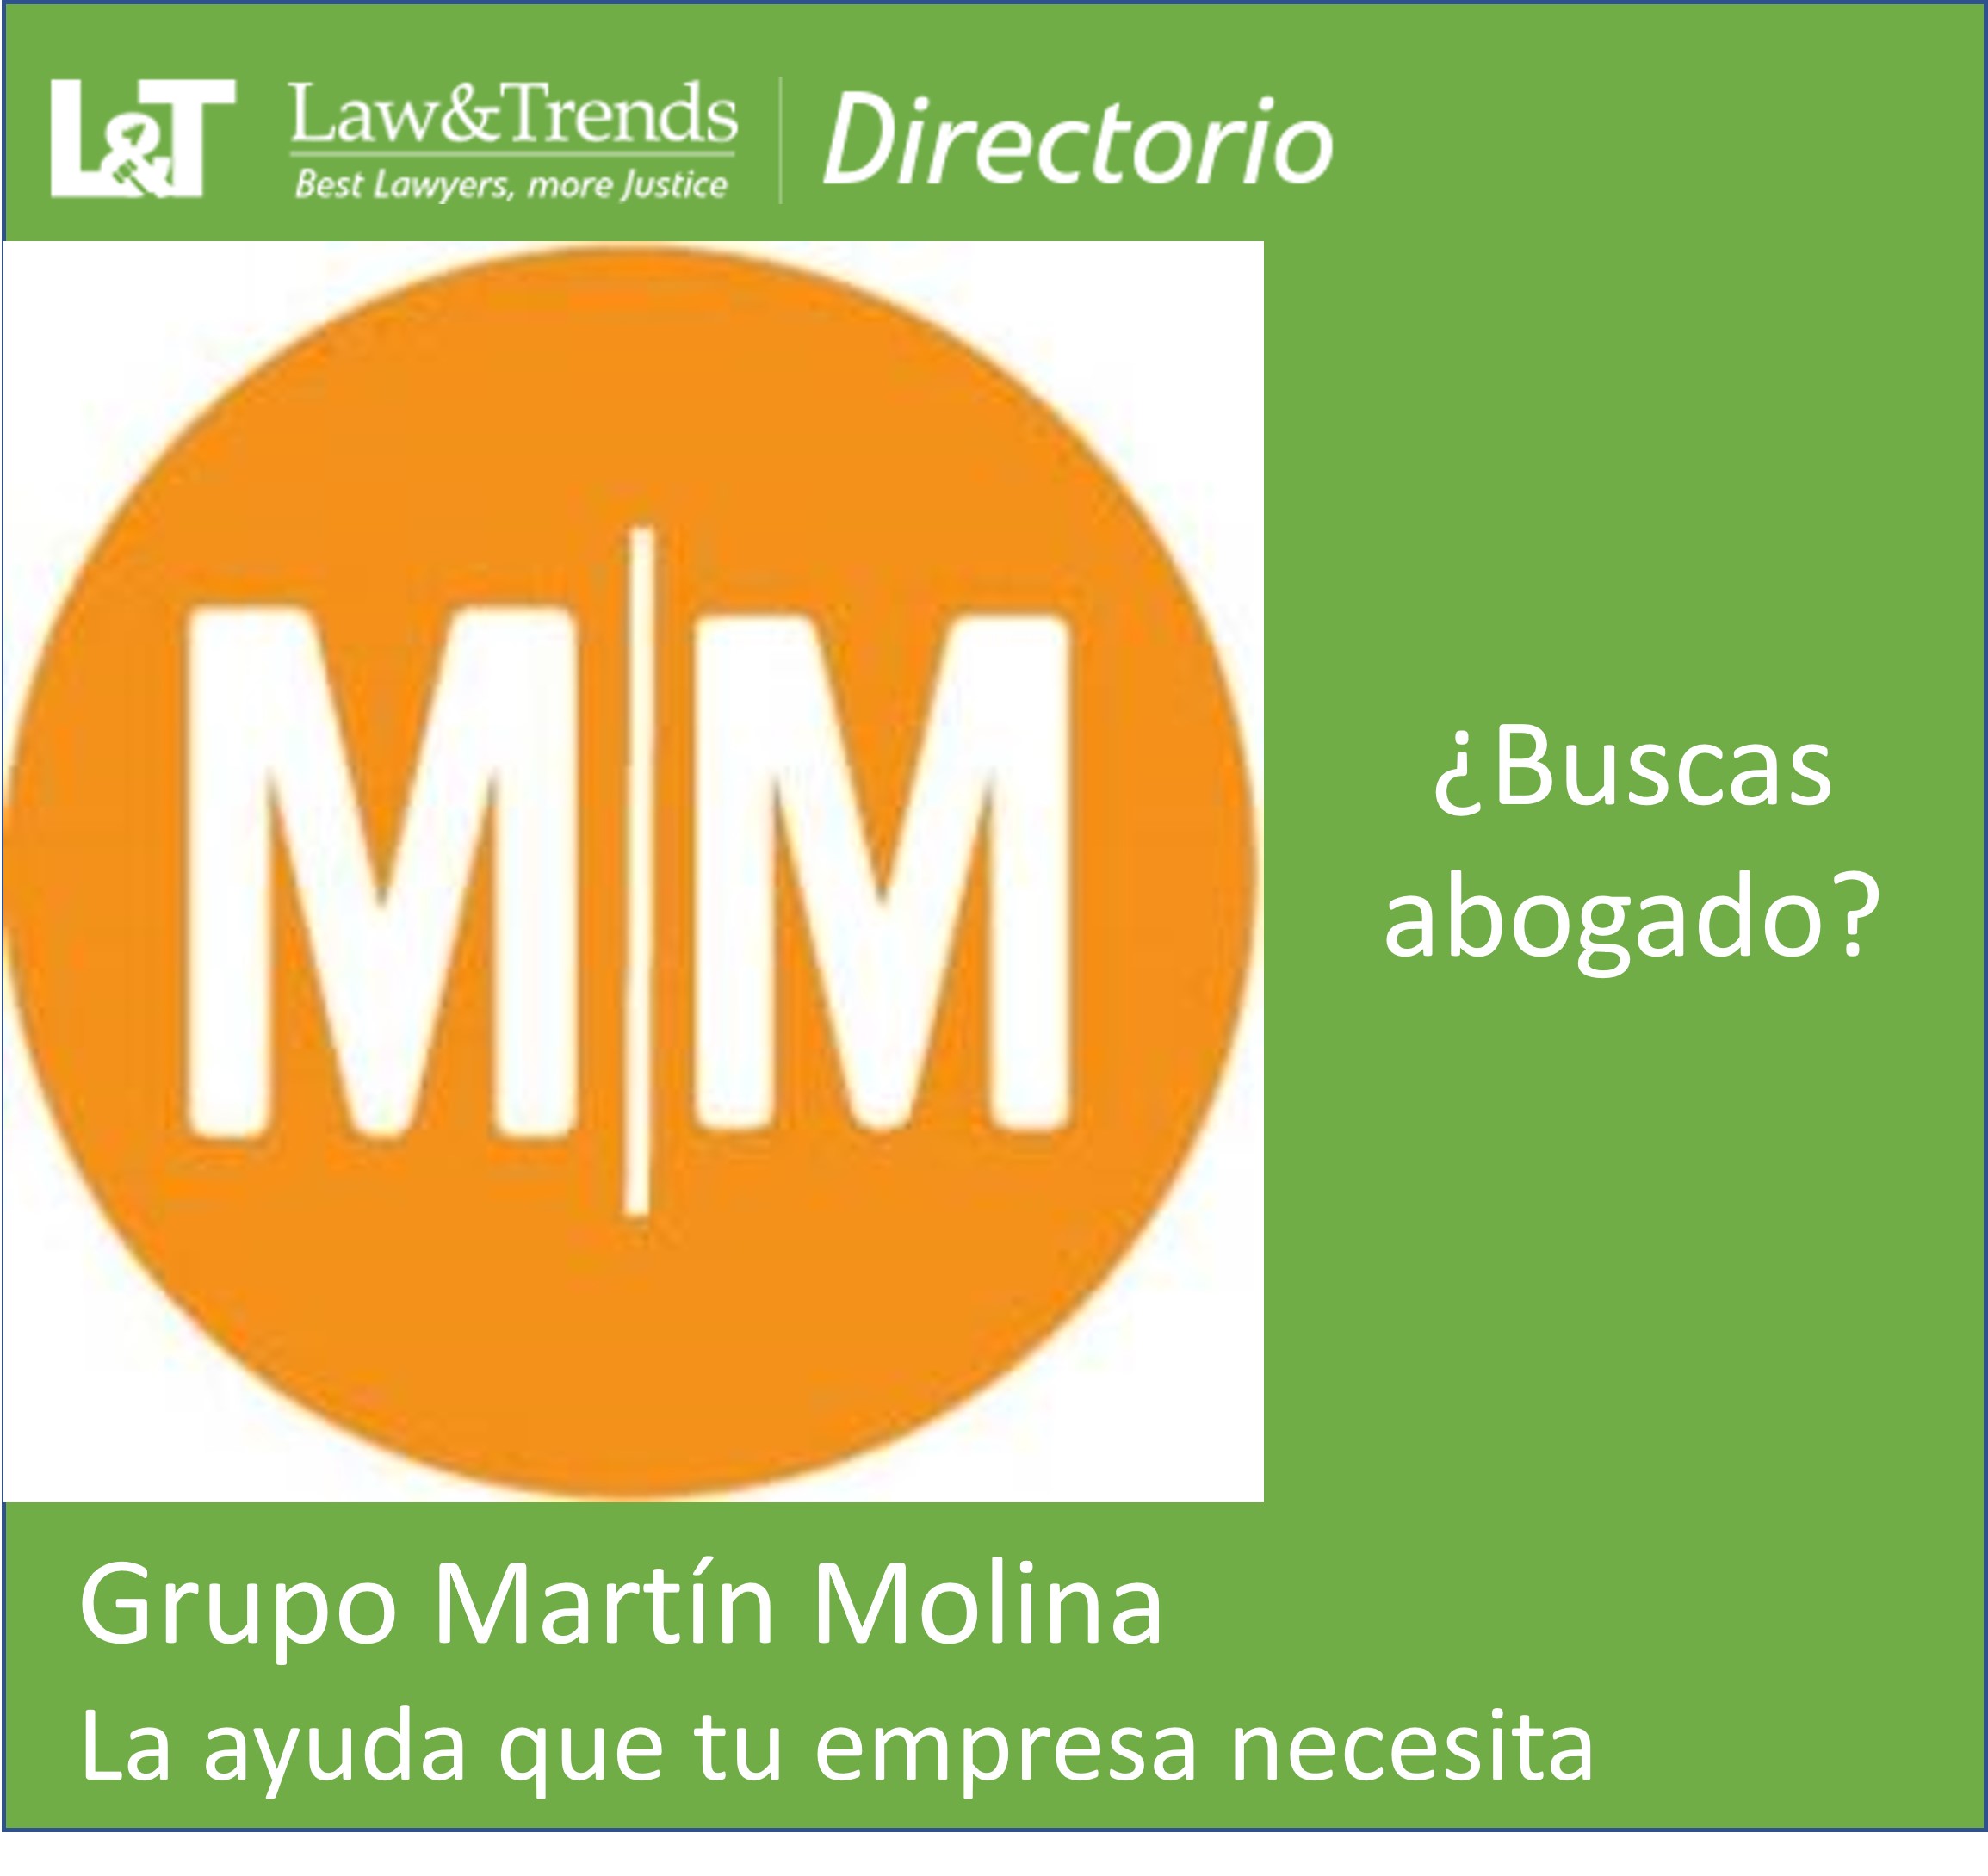 Grupo Martín Molina abogados madrid
